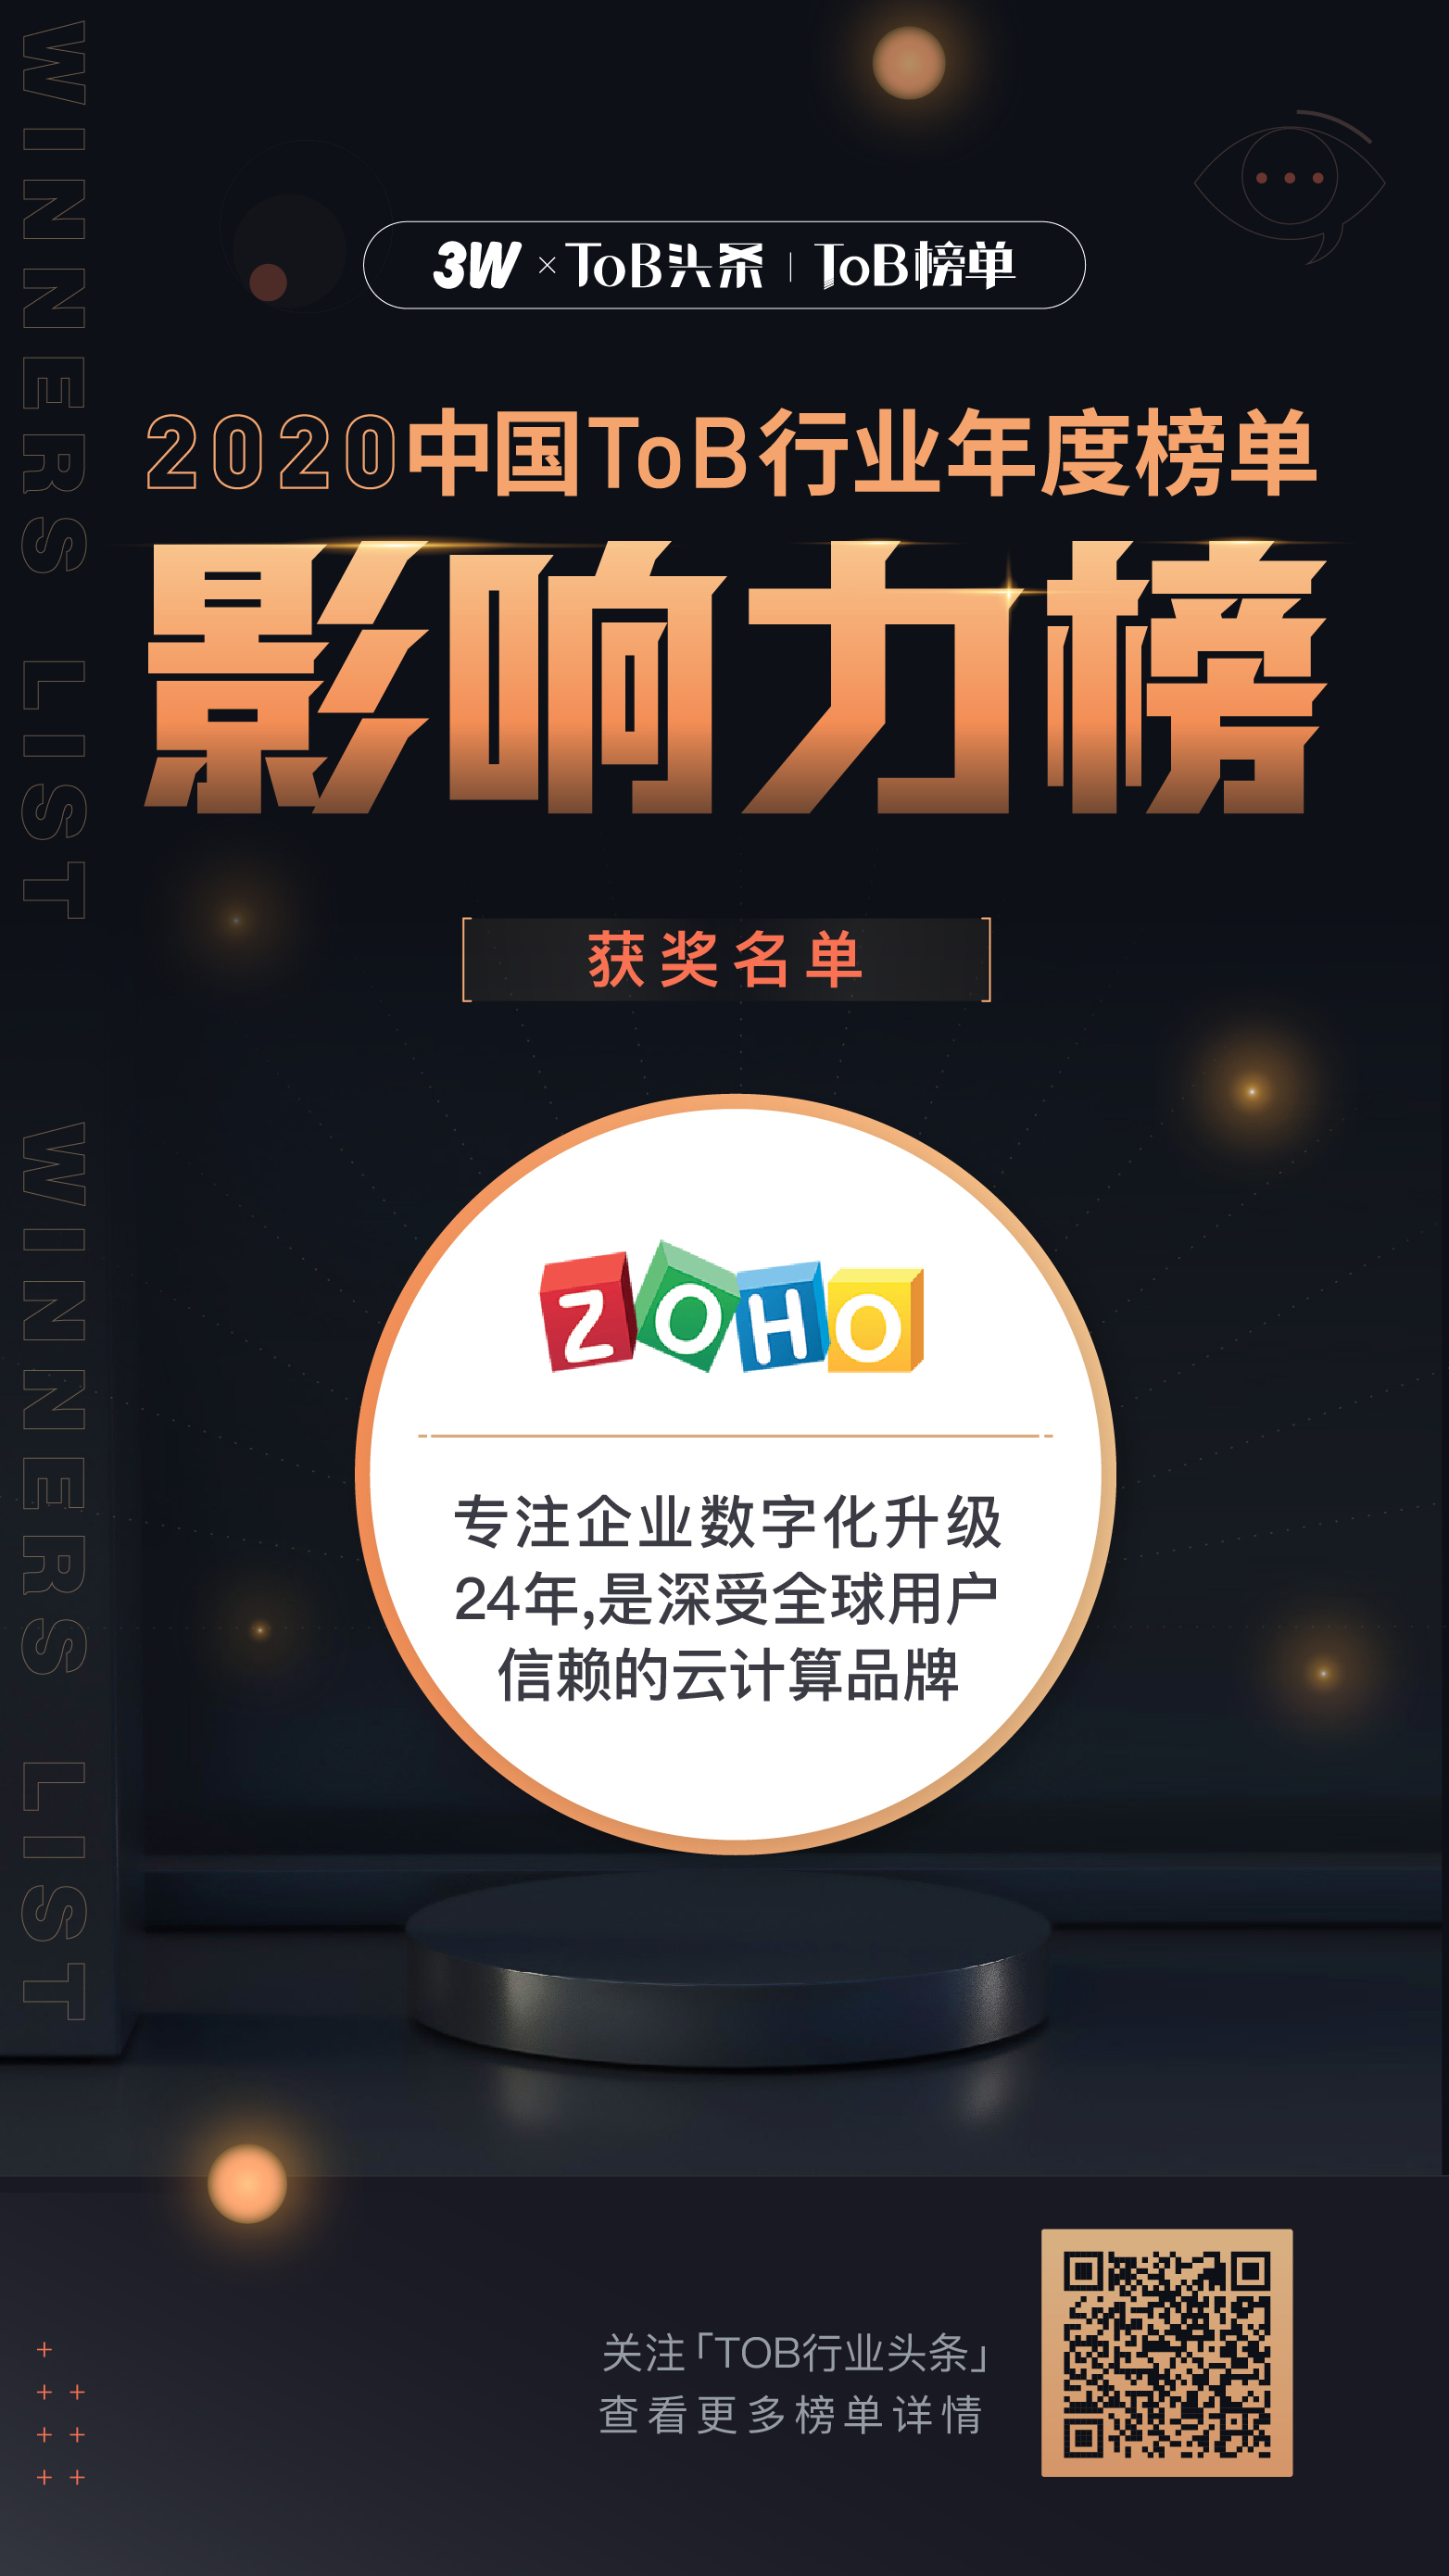 ZOHO荣登“2020中国ToB行业年度企业影响力”榜单